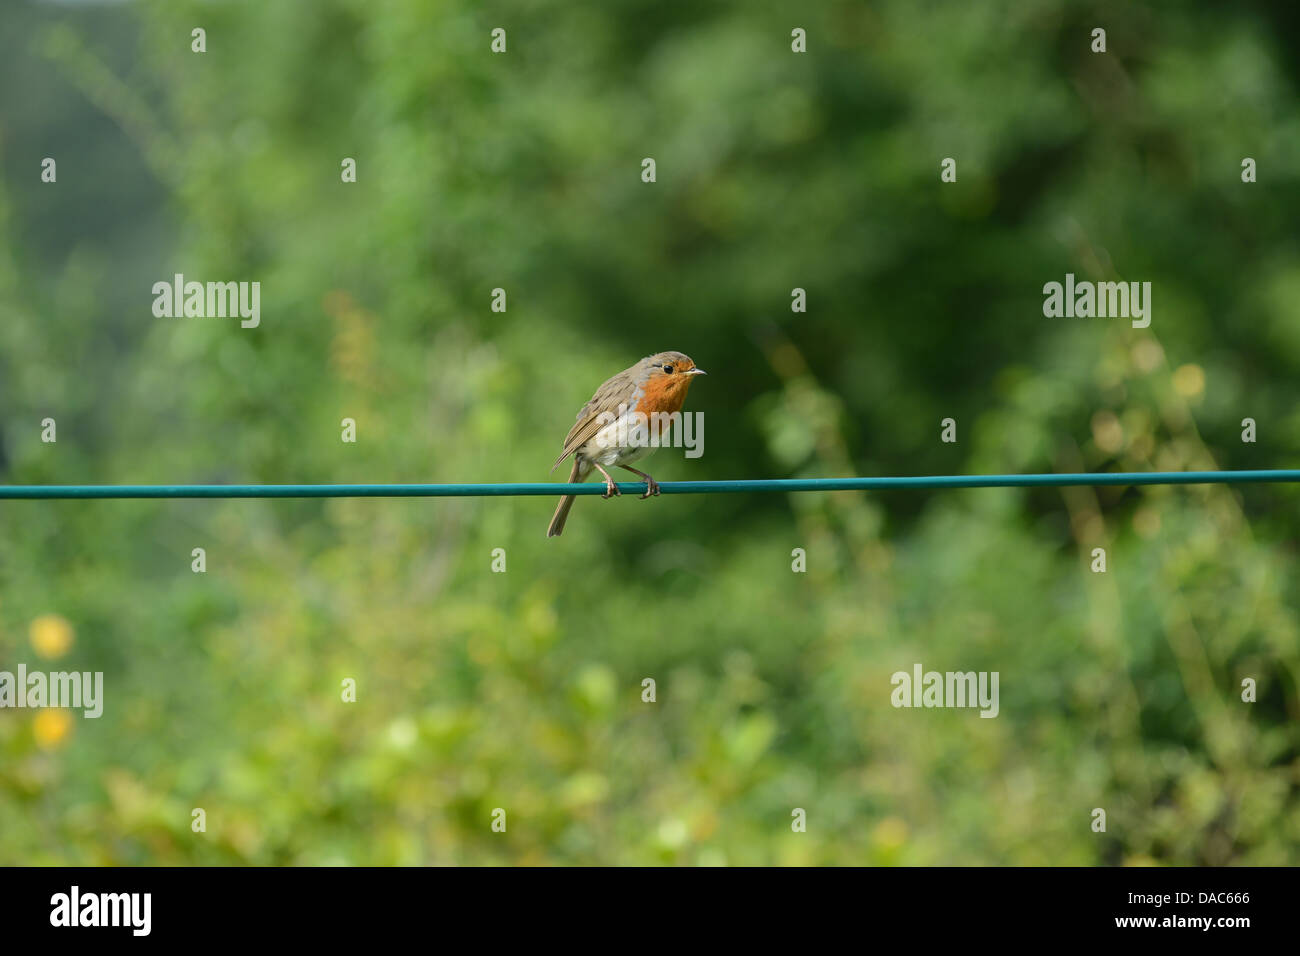 Robin Gartenvögel auf Wäscheleine Uk Stockfoto